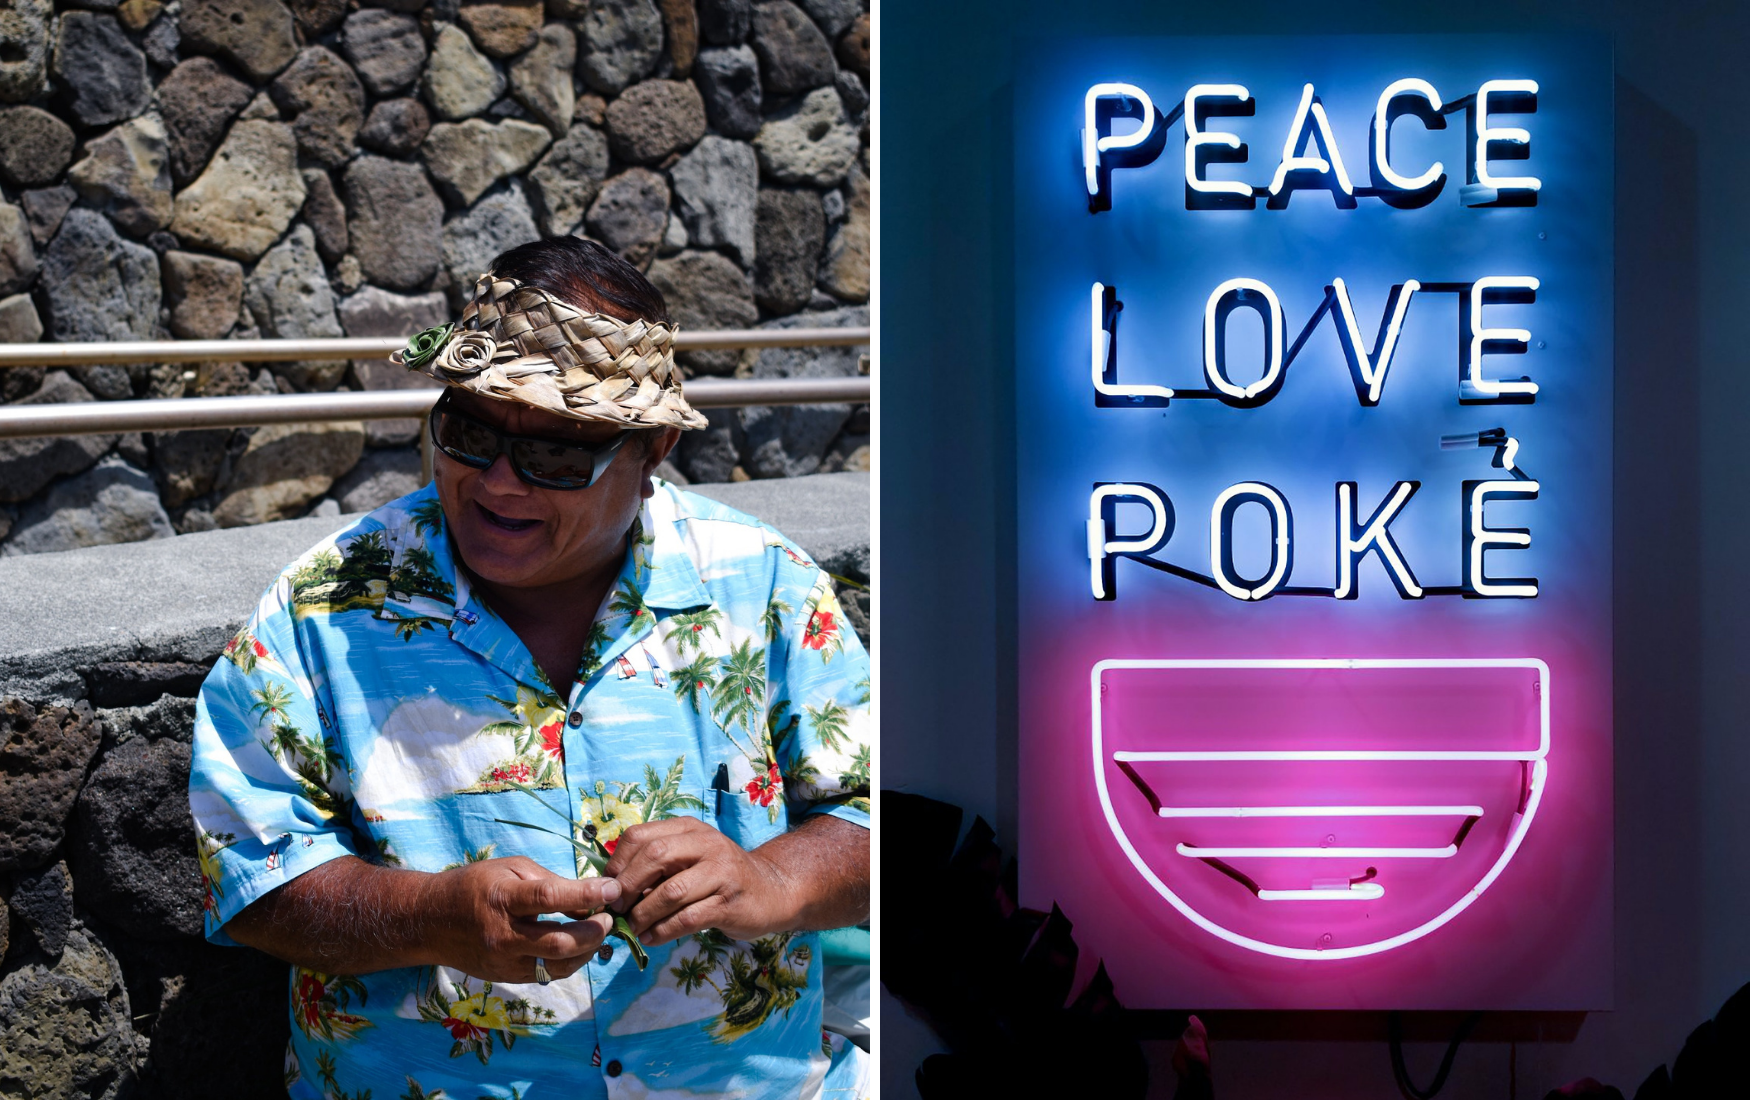 Mann im Hawaii-Hemd und LED-Schild mit Peace Love Poke Schritzug